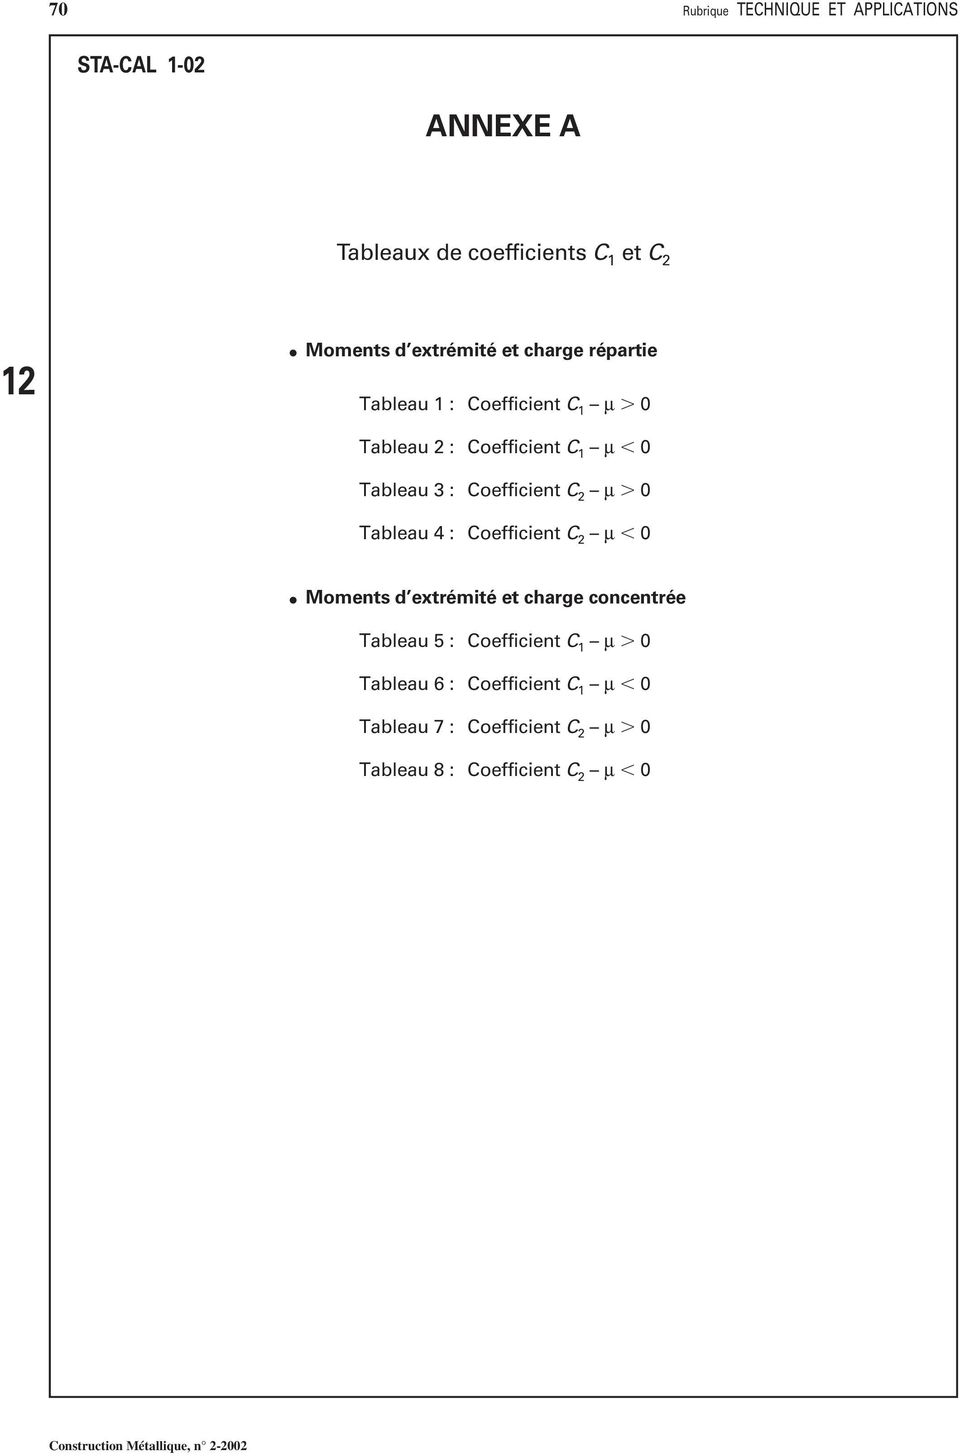 Coefficient C 2 µ 0 Tableau 4 : Coefficient C 2 µ 0 oments d extrémité et charge concentrée Tableau 5 :